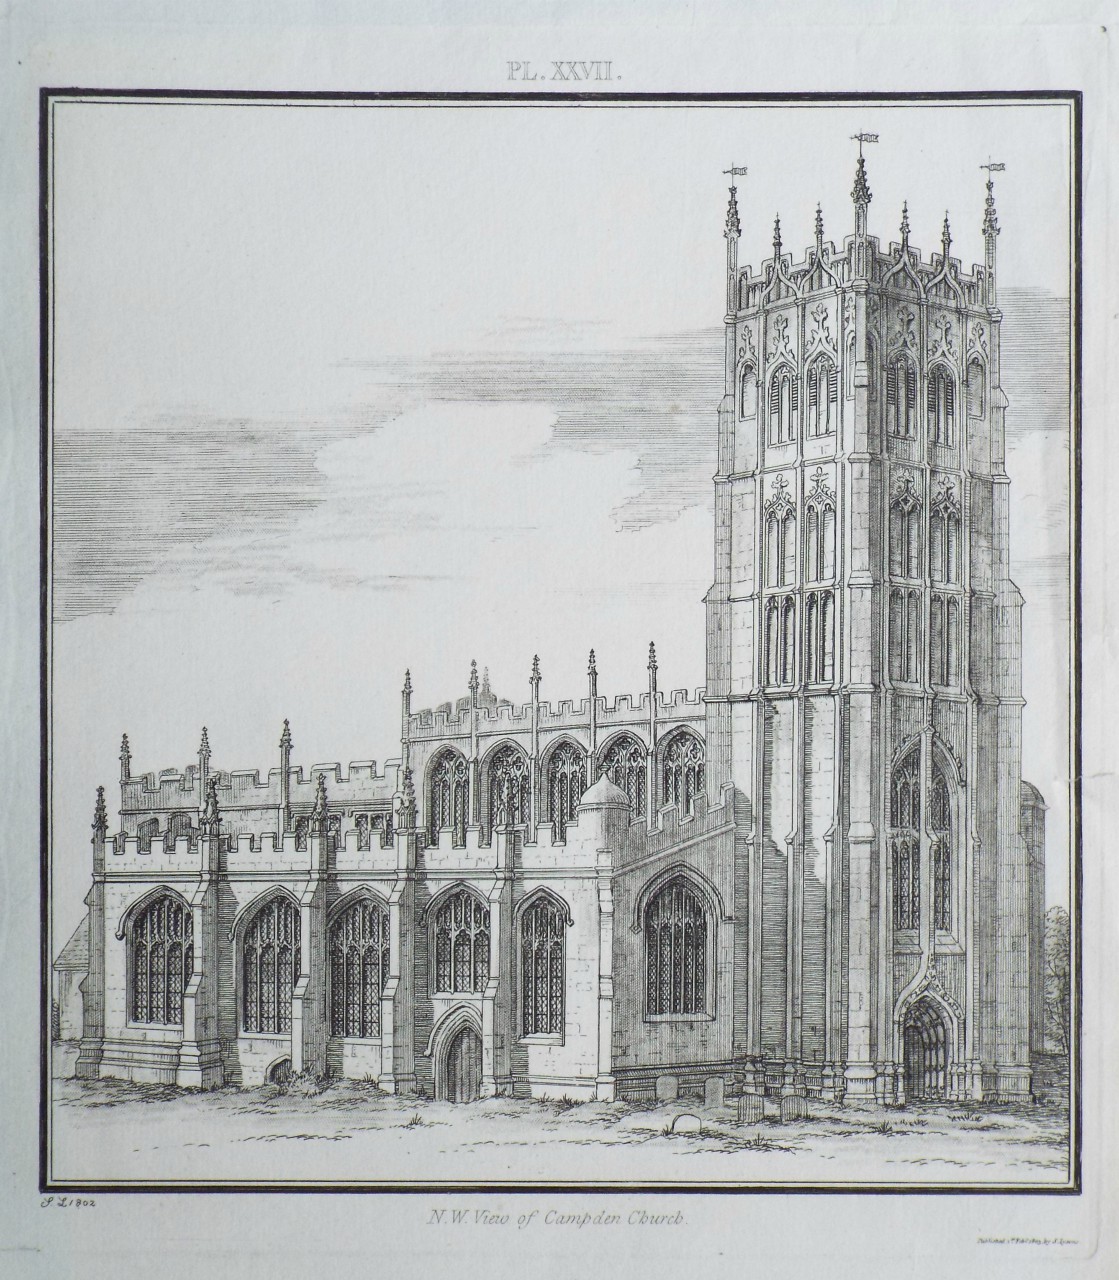 Print - N. W. View of Campden Church.